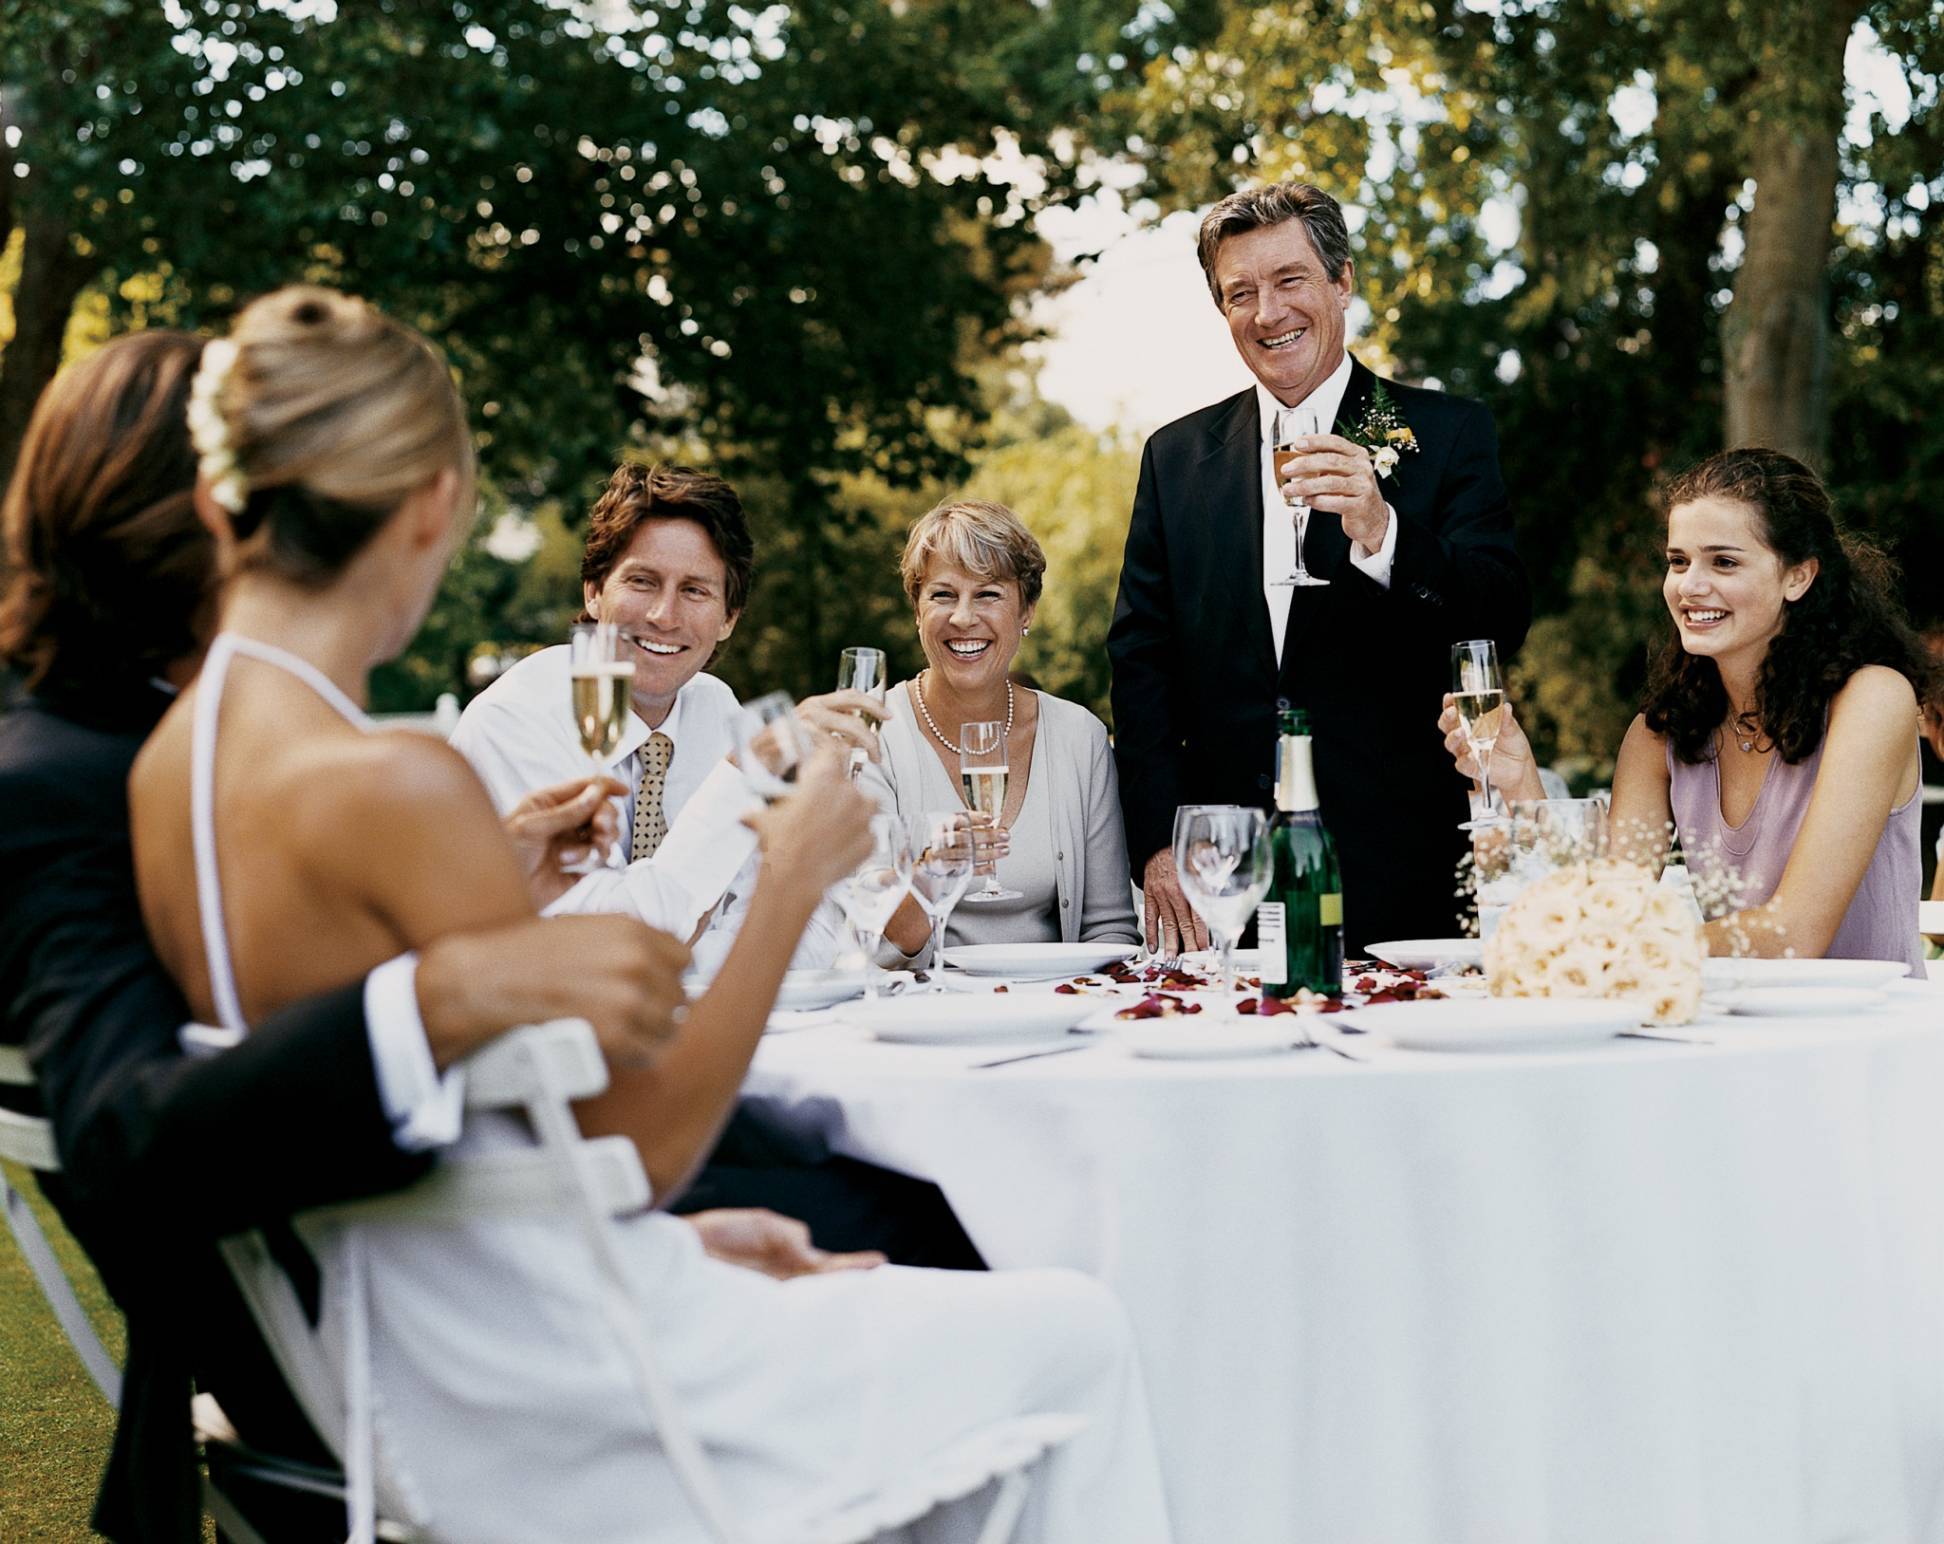 Изучаем свадебный этикет: что можно и чего нельзя делать гостям на свадьбе